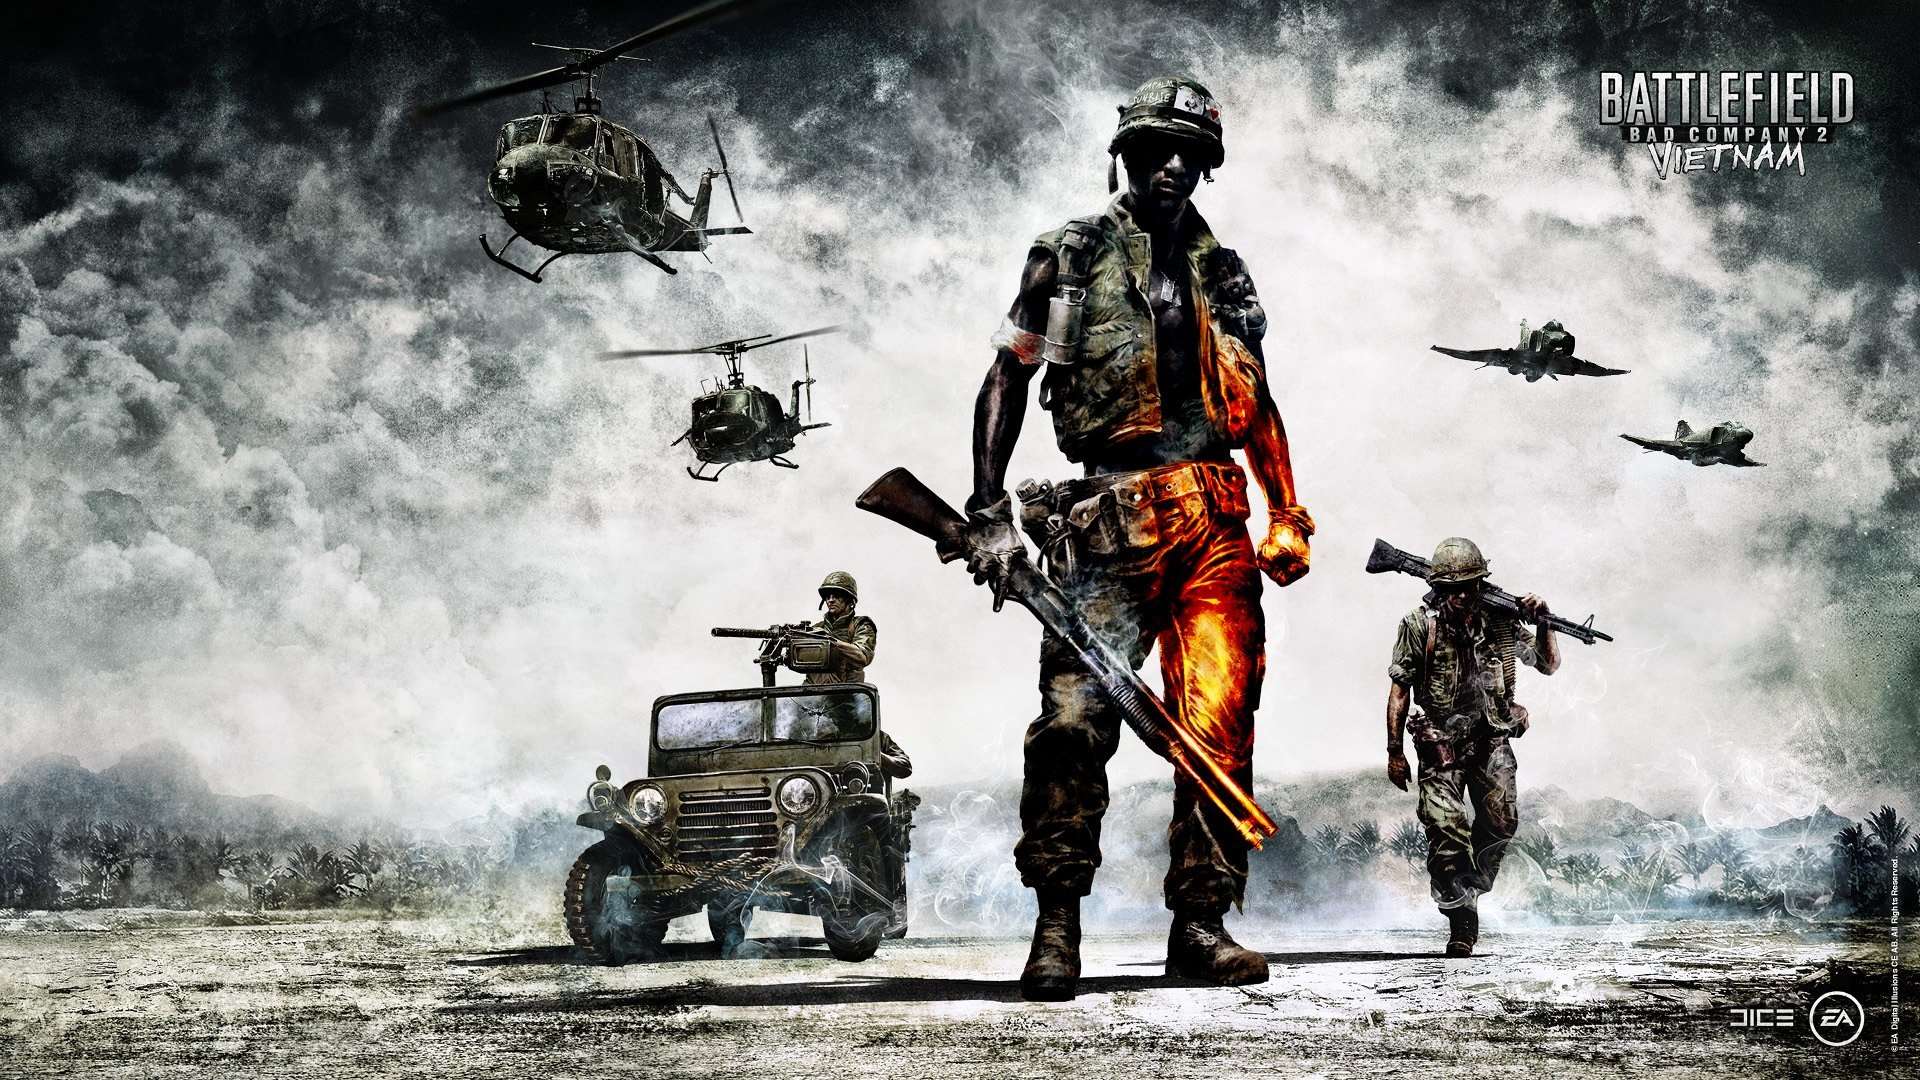 Battlefield Vietnam wallpaper, Video Game, HQ Battlefield Vietnam